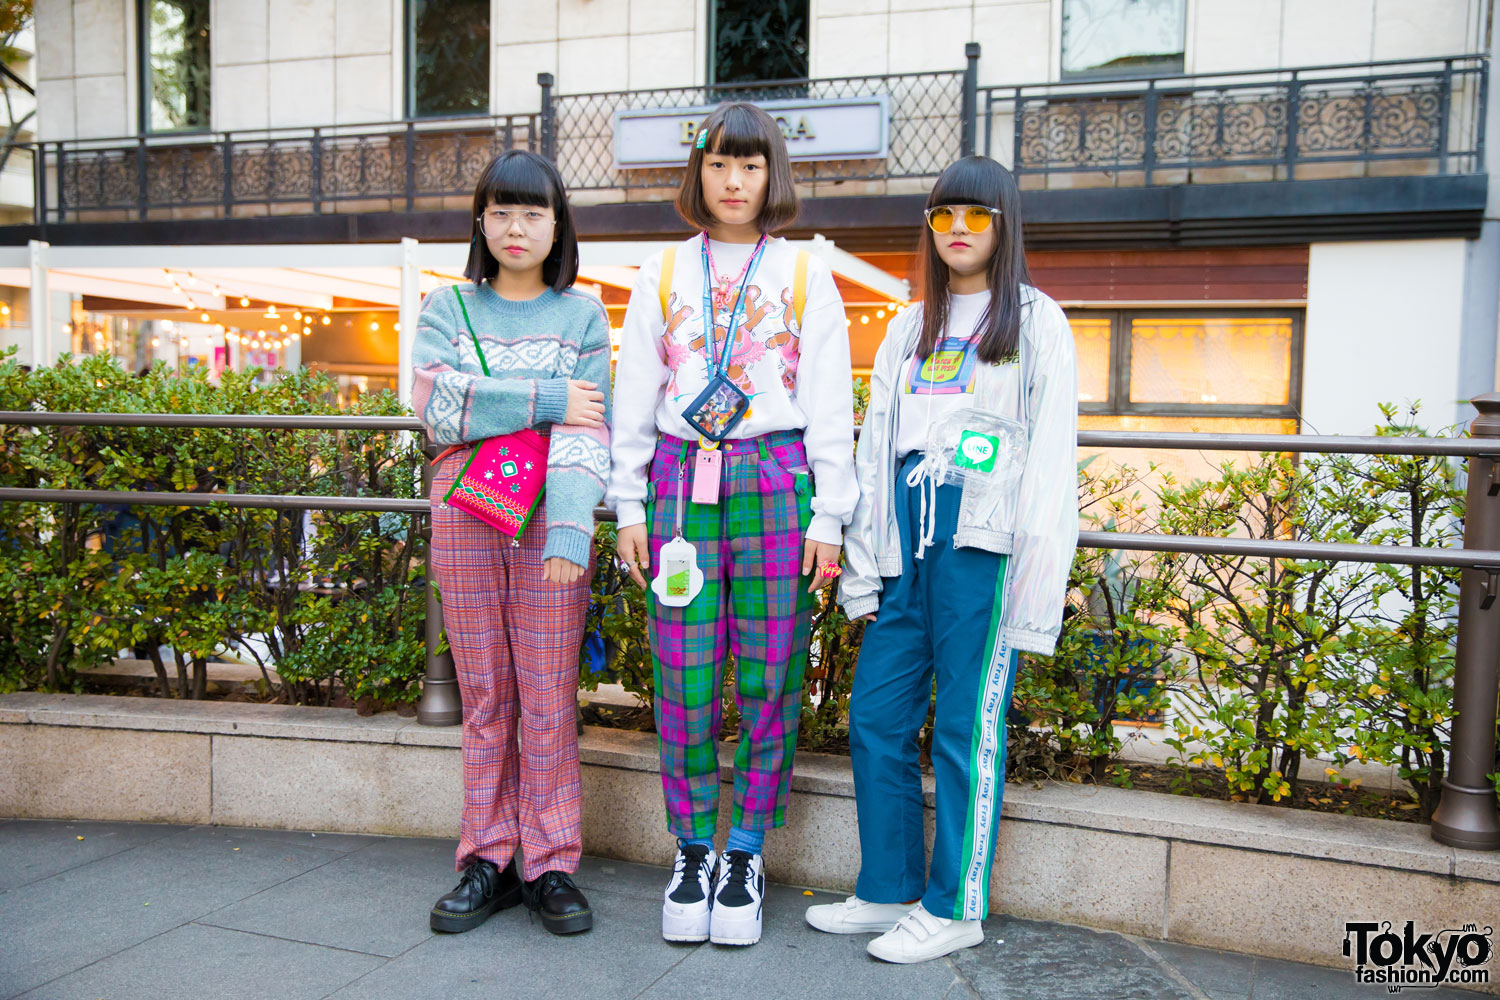 Harajuku Girls Street Fashion w/ Chicago, WEGO, Spinns, WC, Kinji ...